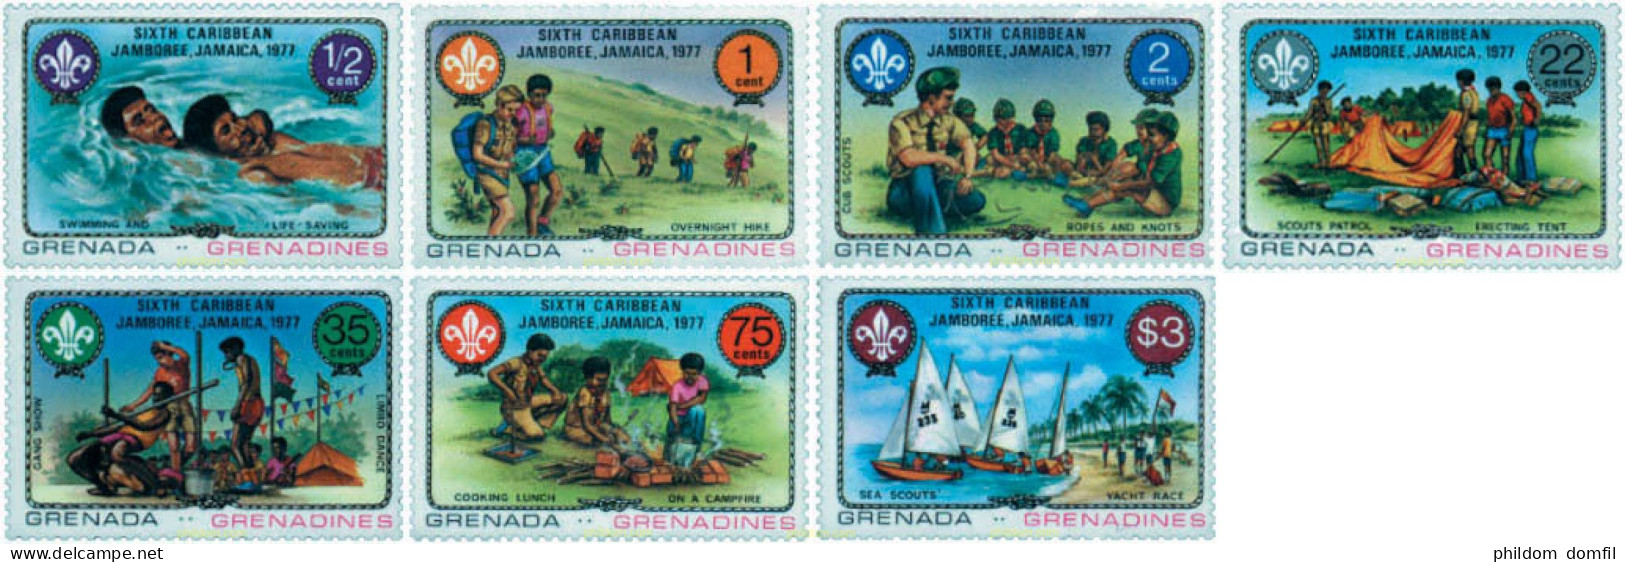 38642 MNH GRANADA GRANADINAS 1977 6 JAMBOREE DEL CARIBE EN JAMAICA - Grenada (1974-...)